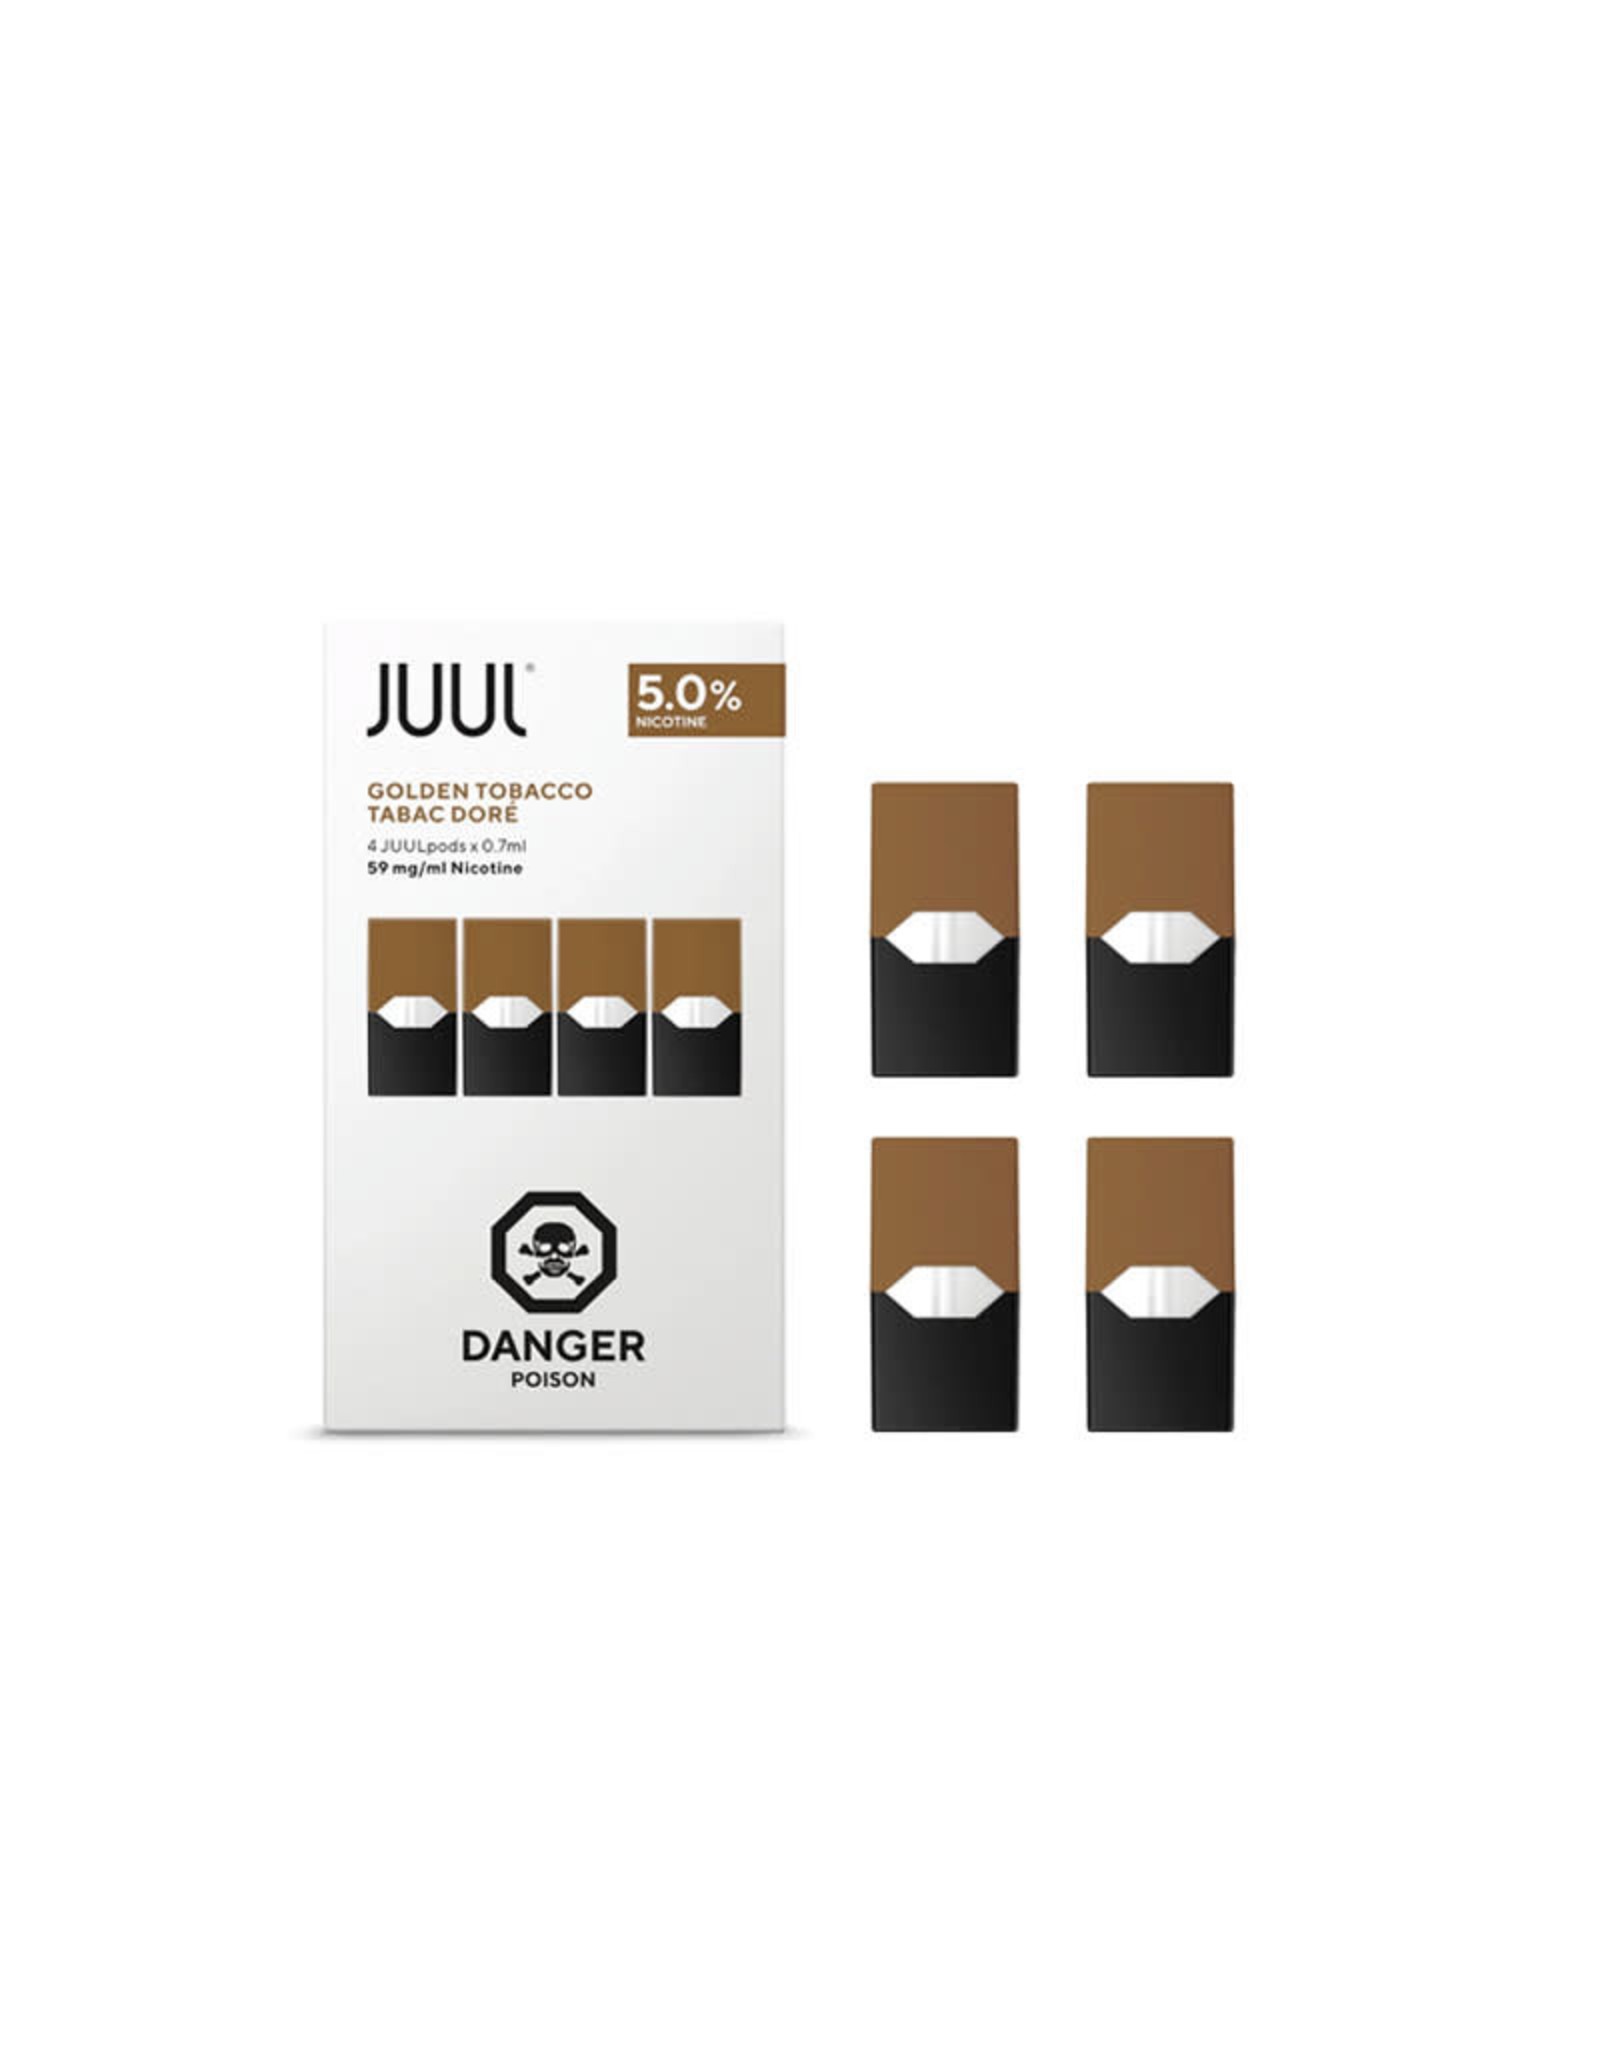 JUUL JUUL - Golden Tobacco